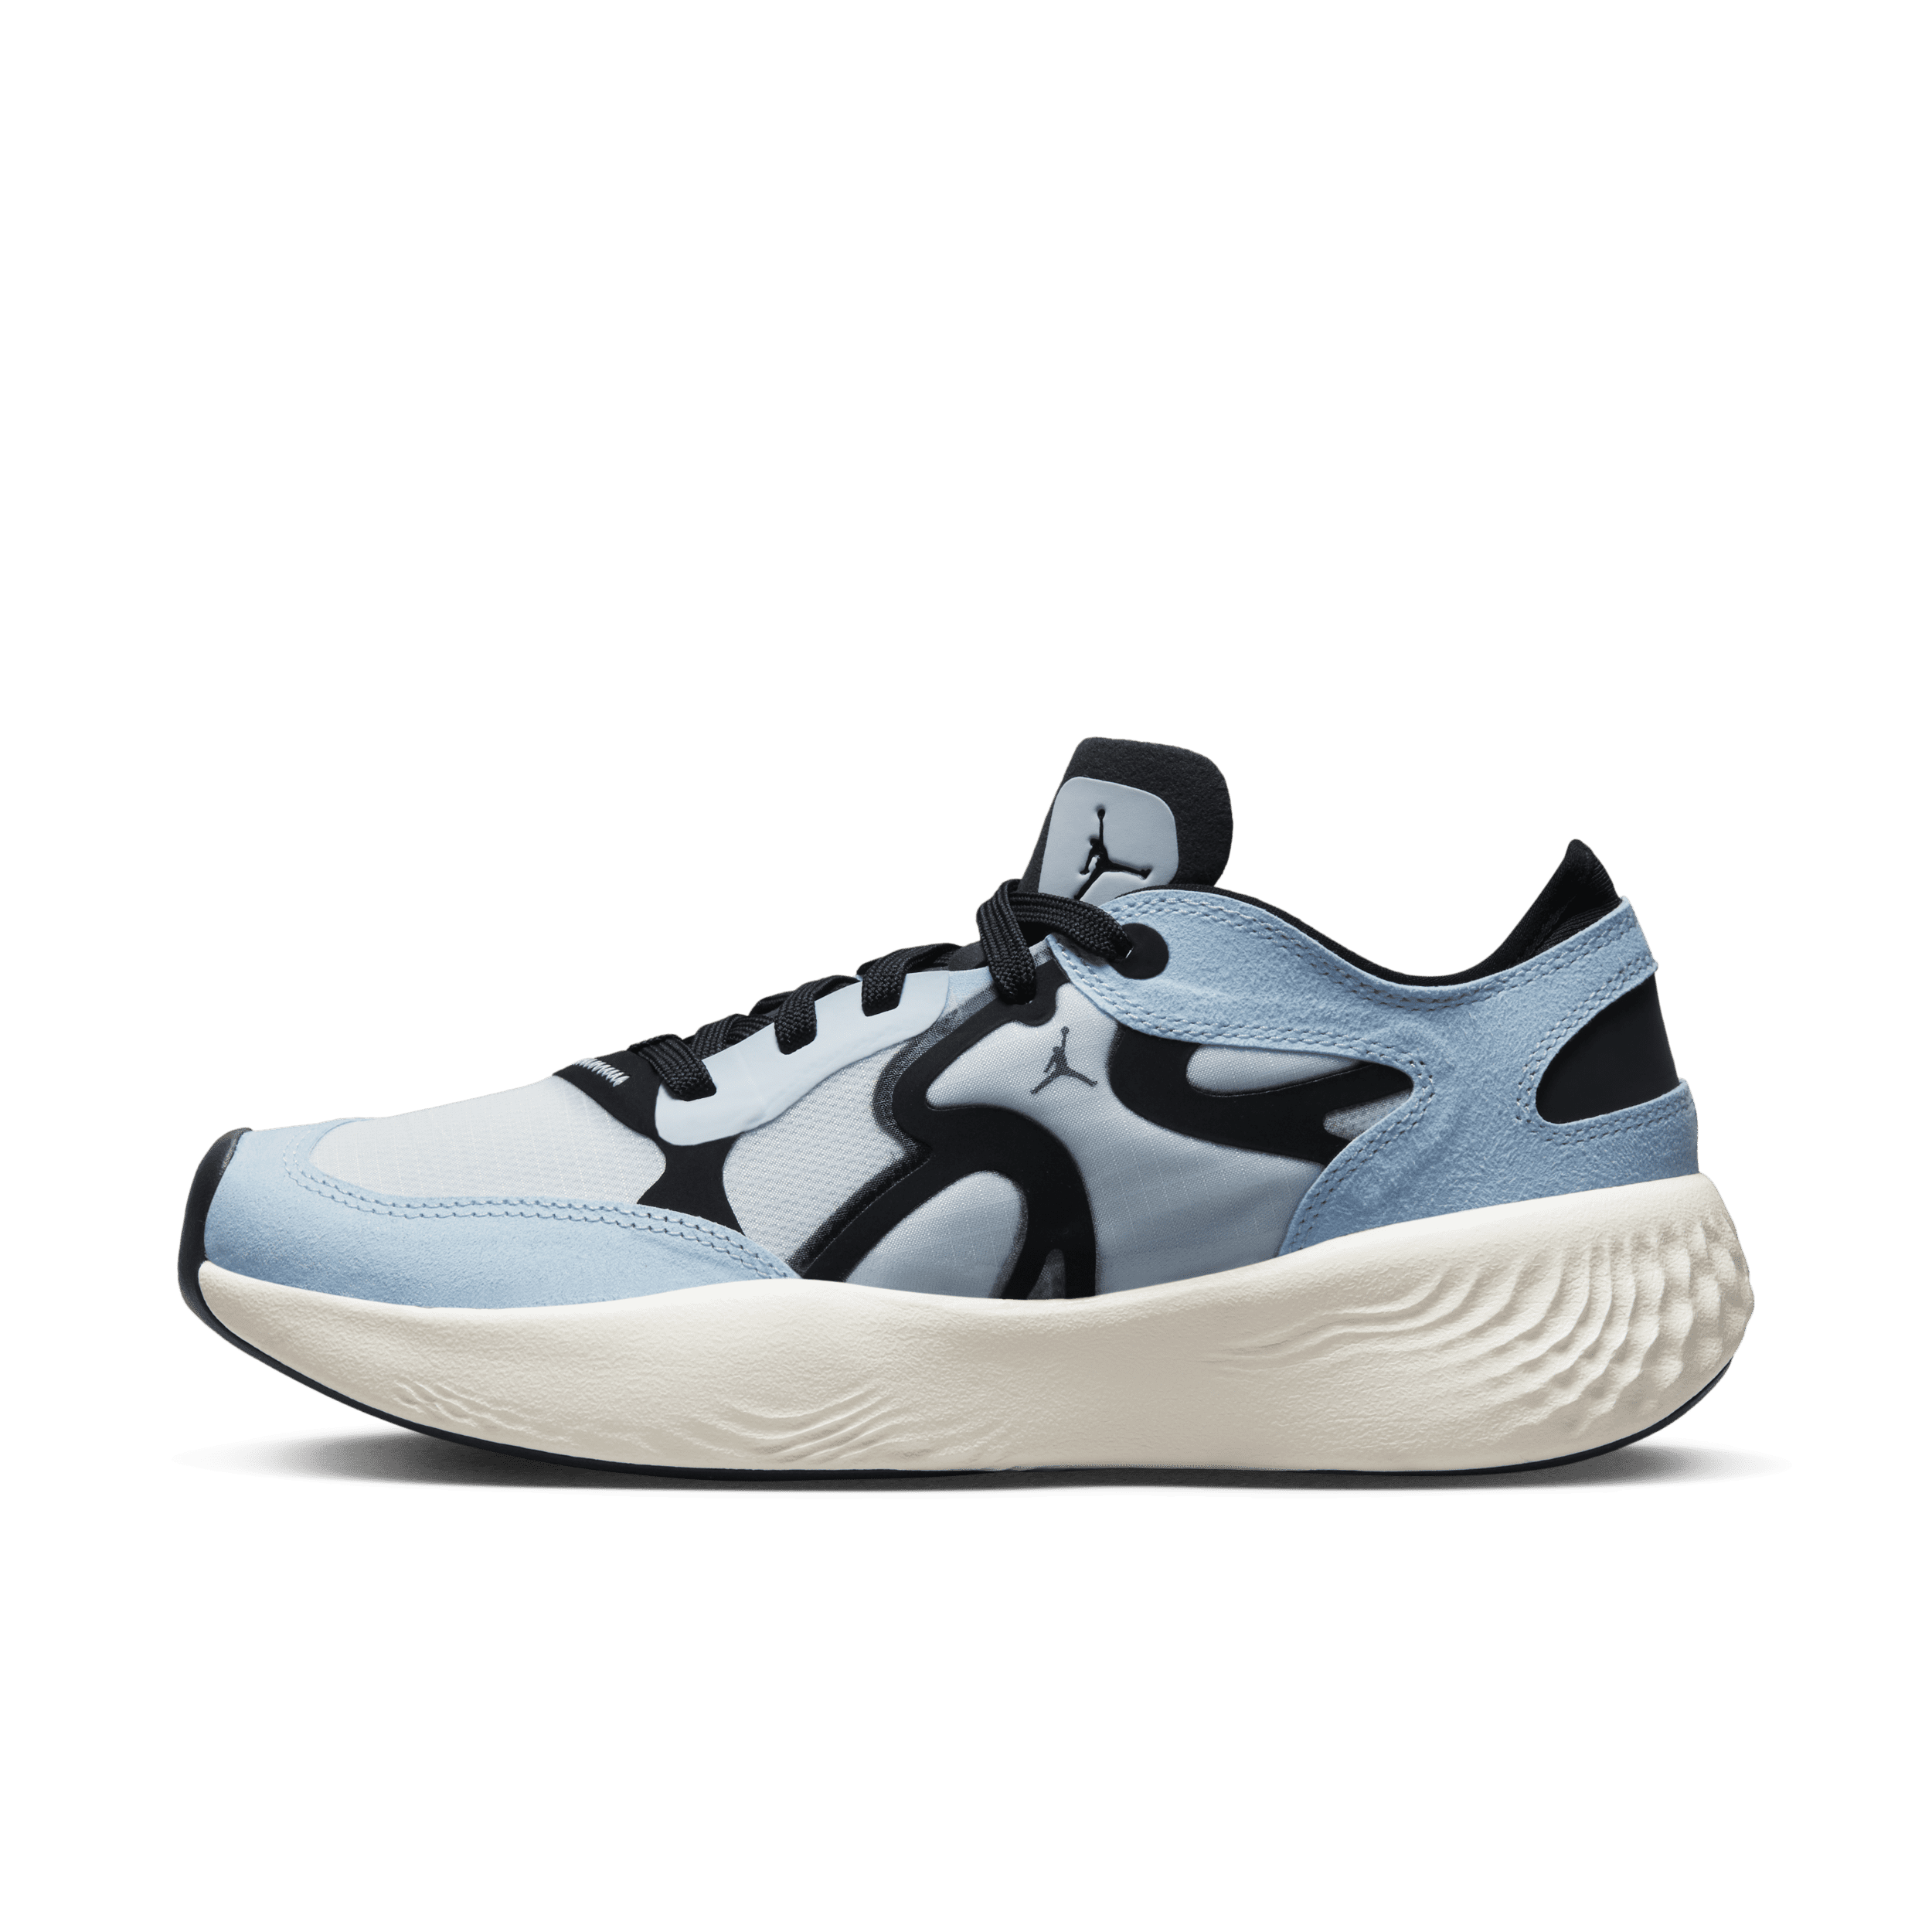 Jordan Delta 3 Low-skoene til kvinder - blå